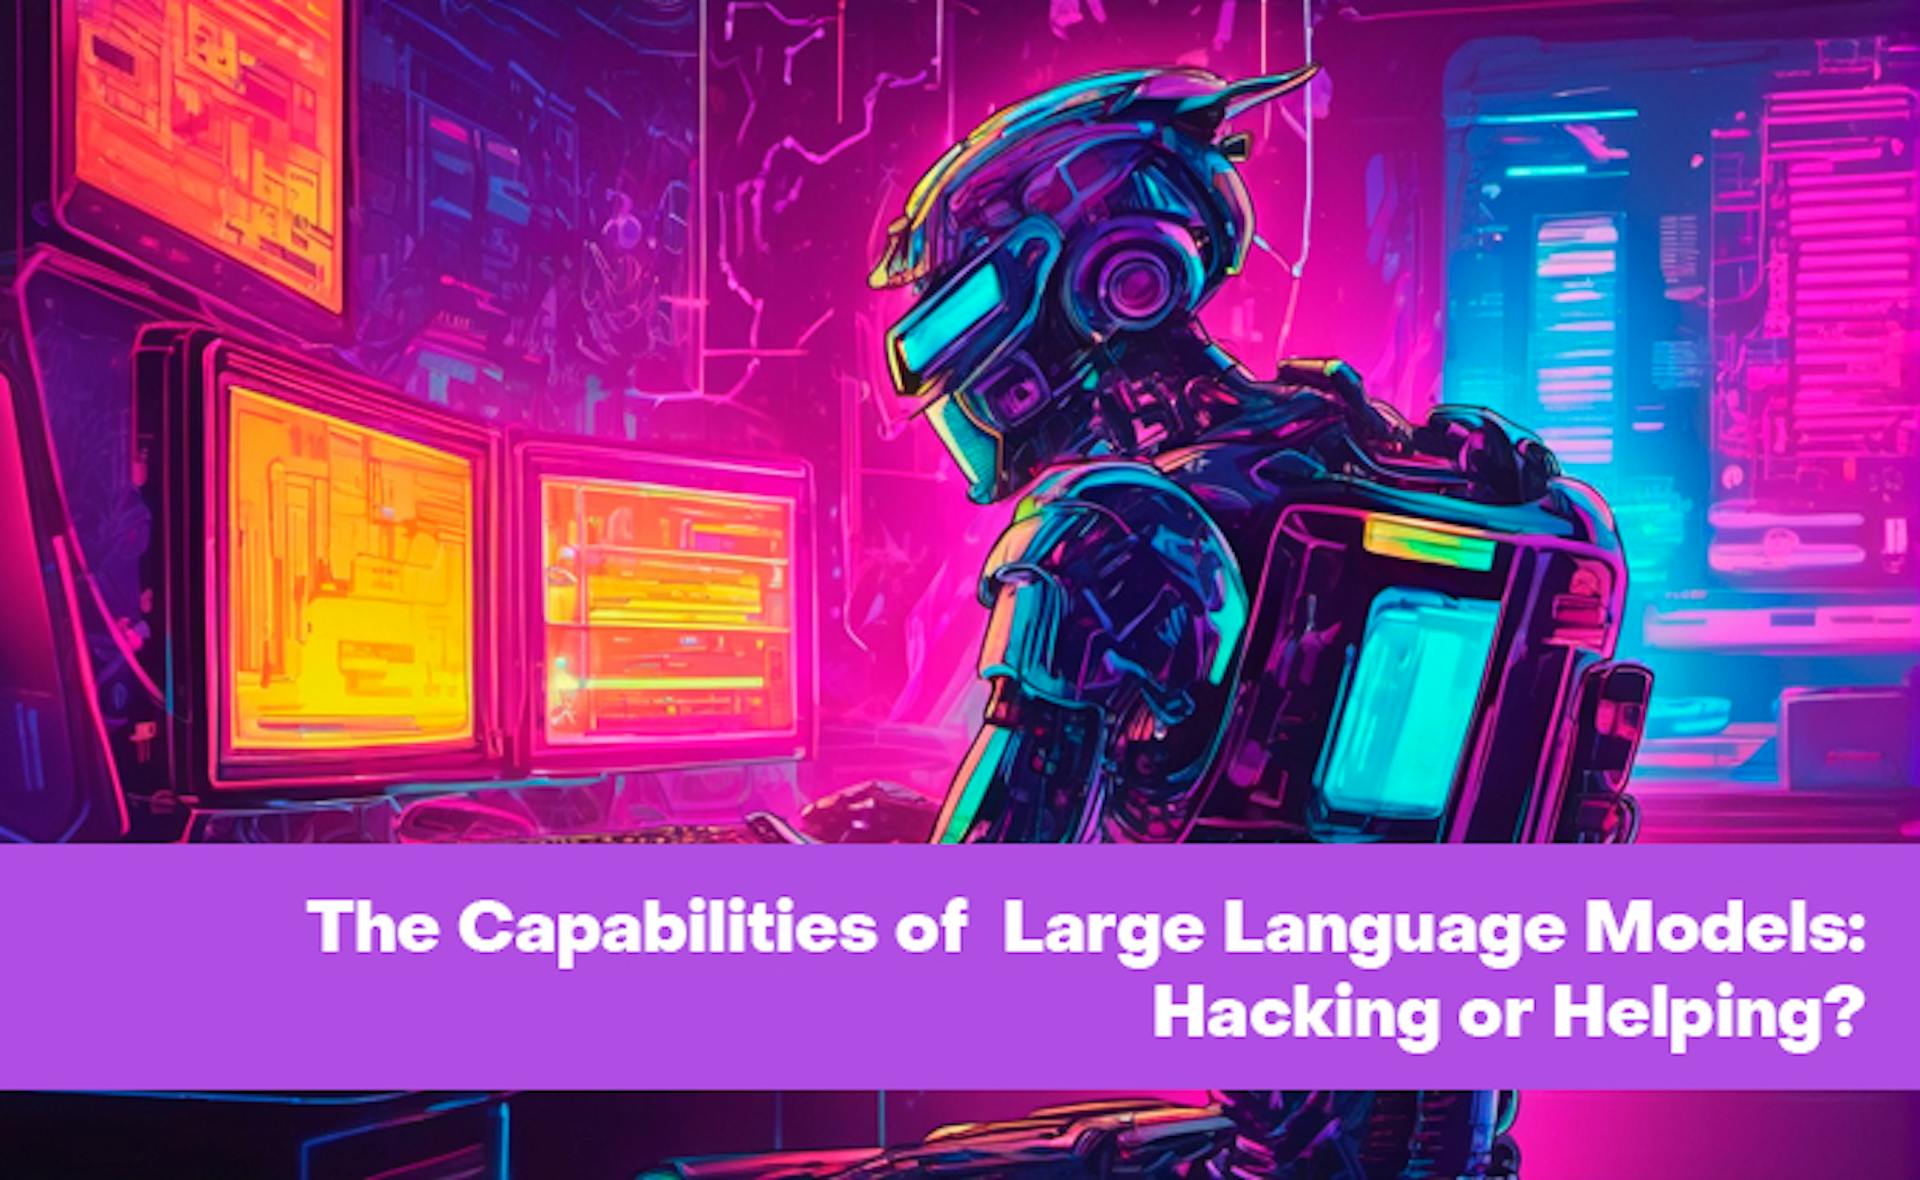 featured image - As capacidades dos grandes modelos de linguagem: hackear ou ajudar?